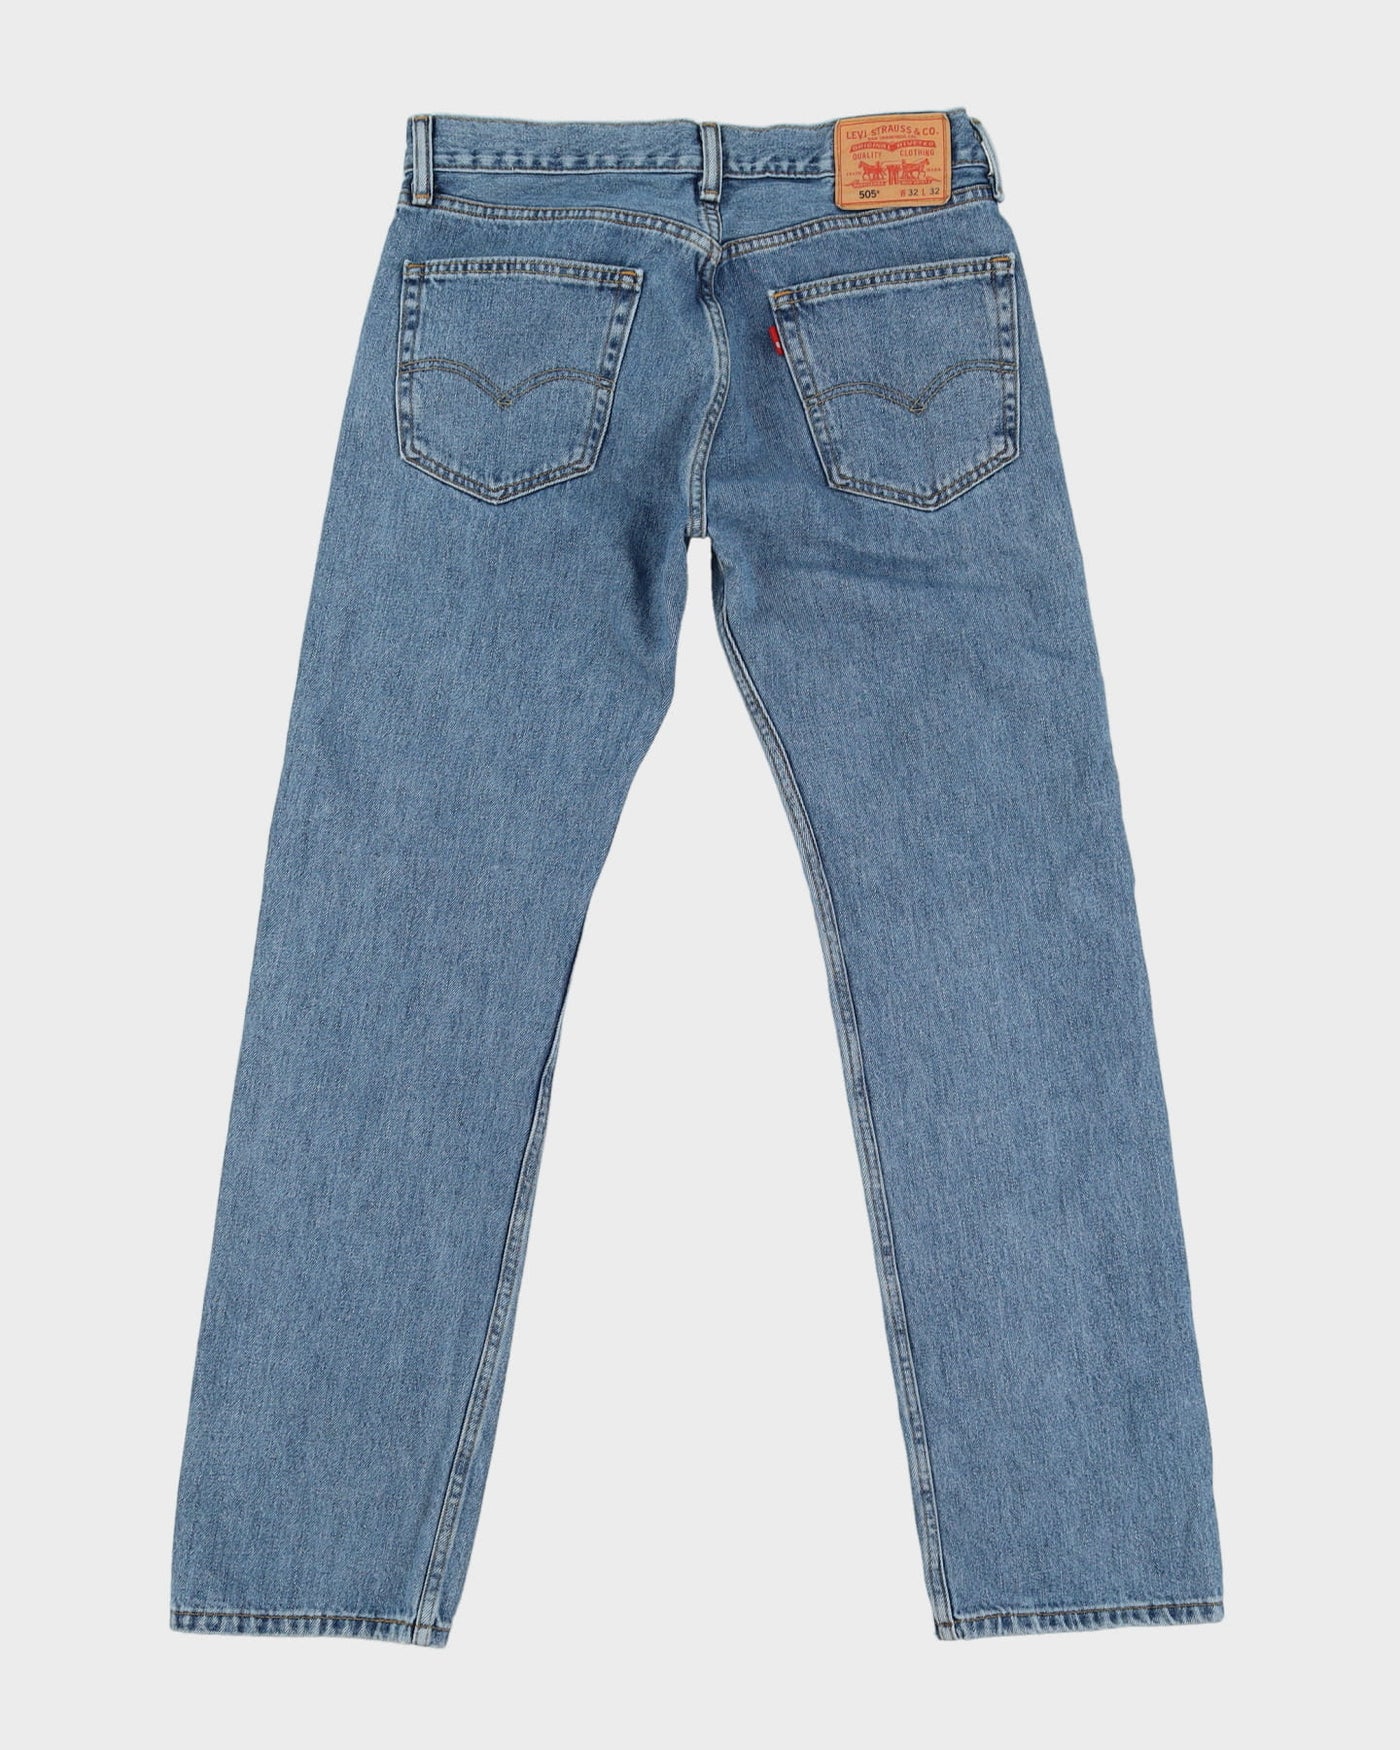 Levi's 505 Blue Medium Wash Jeans - W32 L32